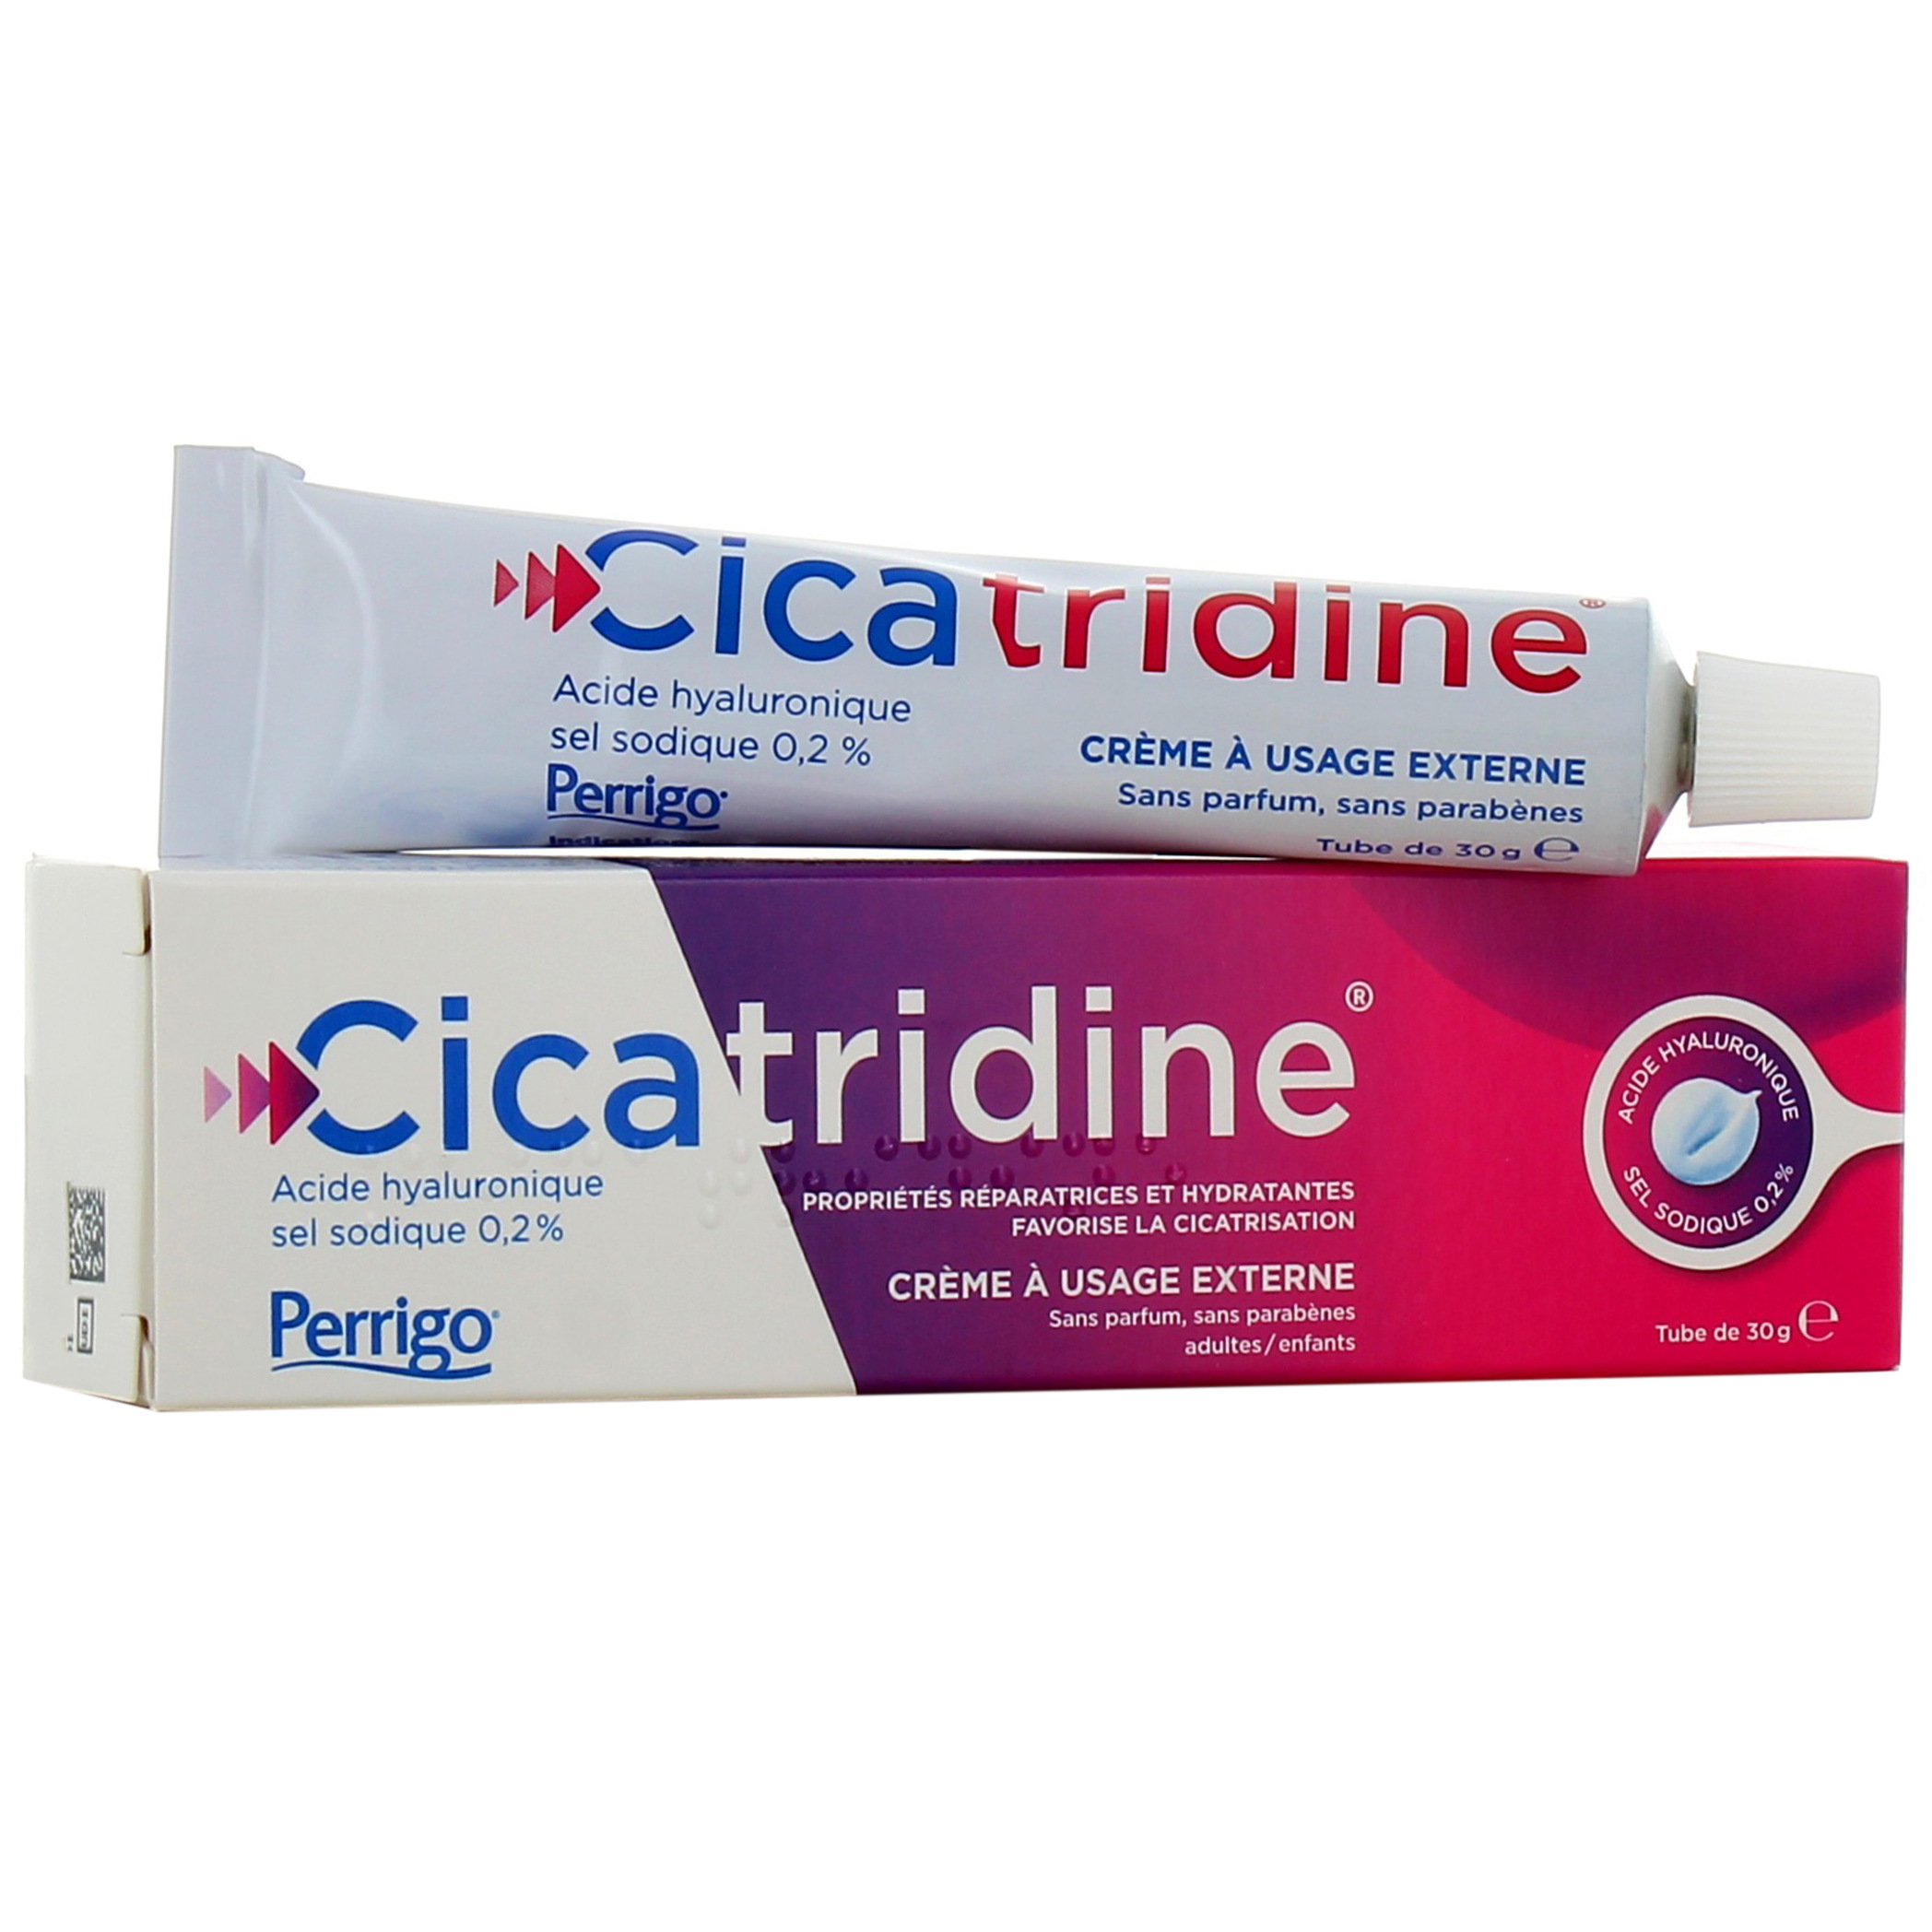 Cicatridine Acide Hyaluronique 10 suppositoires - Cdiscount Santé